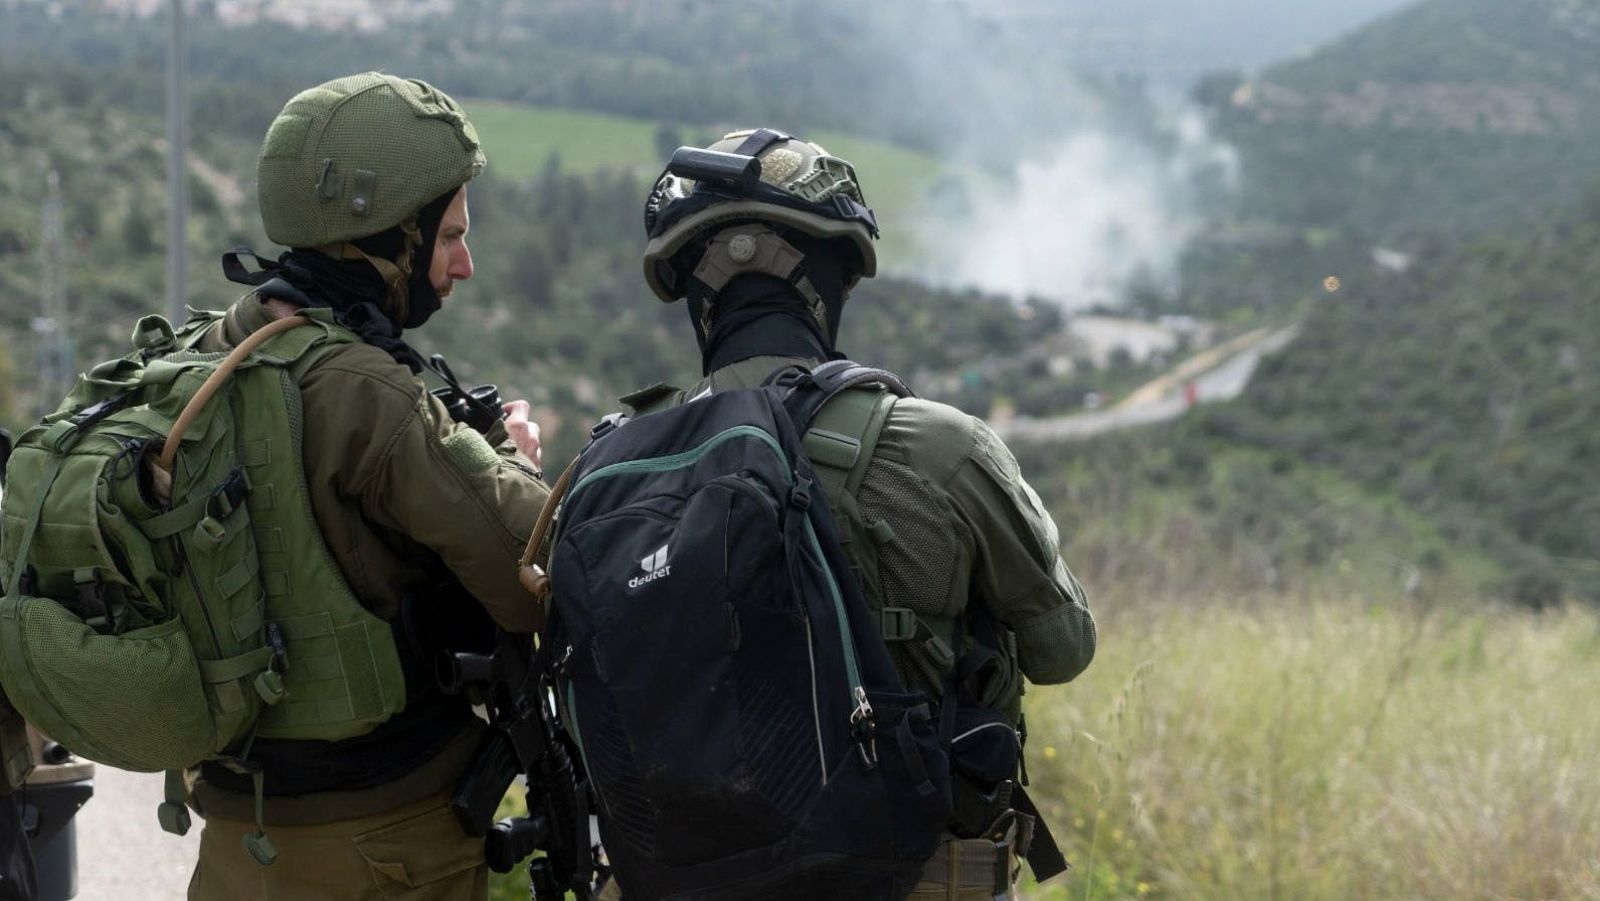 Continúa la polémica por los vídeos de soldados israelíes riéndose de los palestinos en Gaza